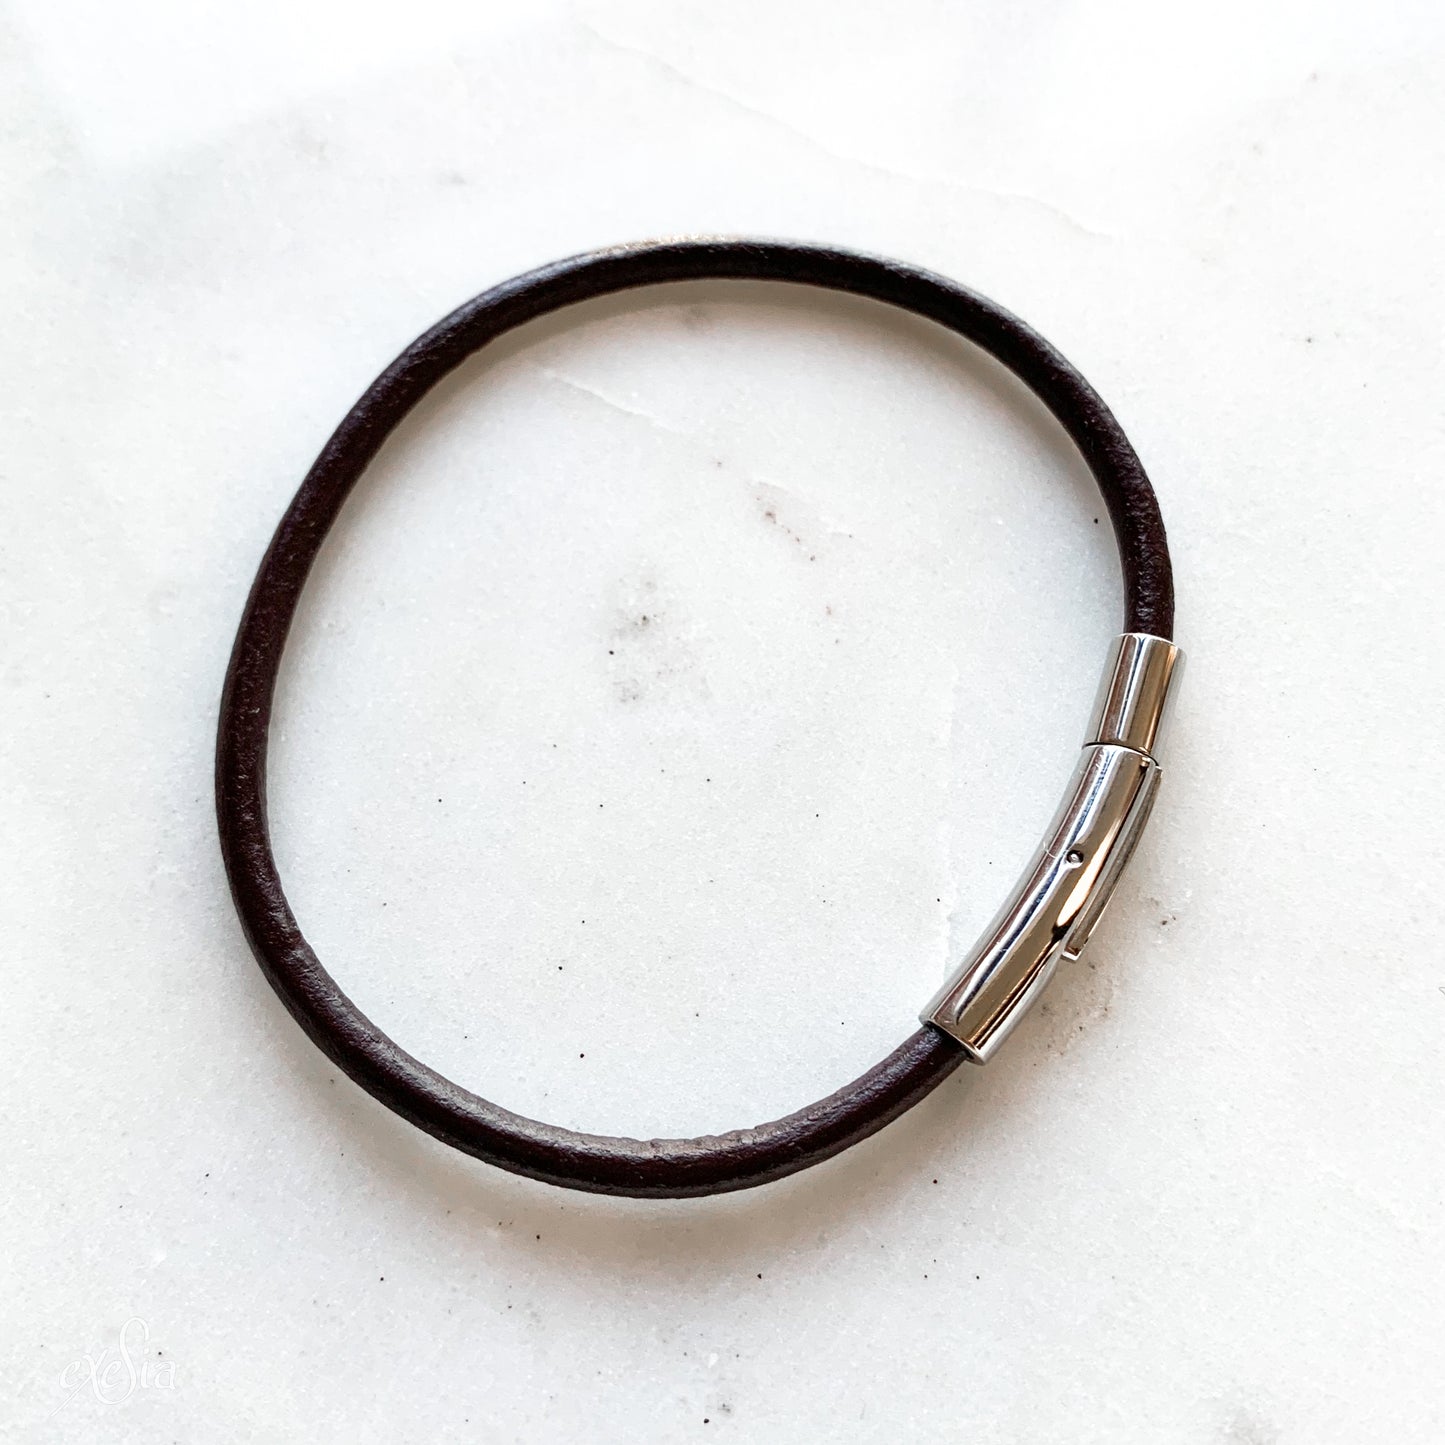 Leather / PVC Bracelet